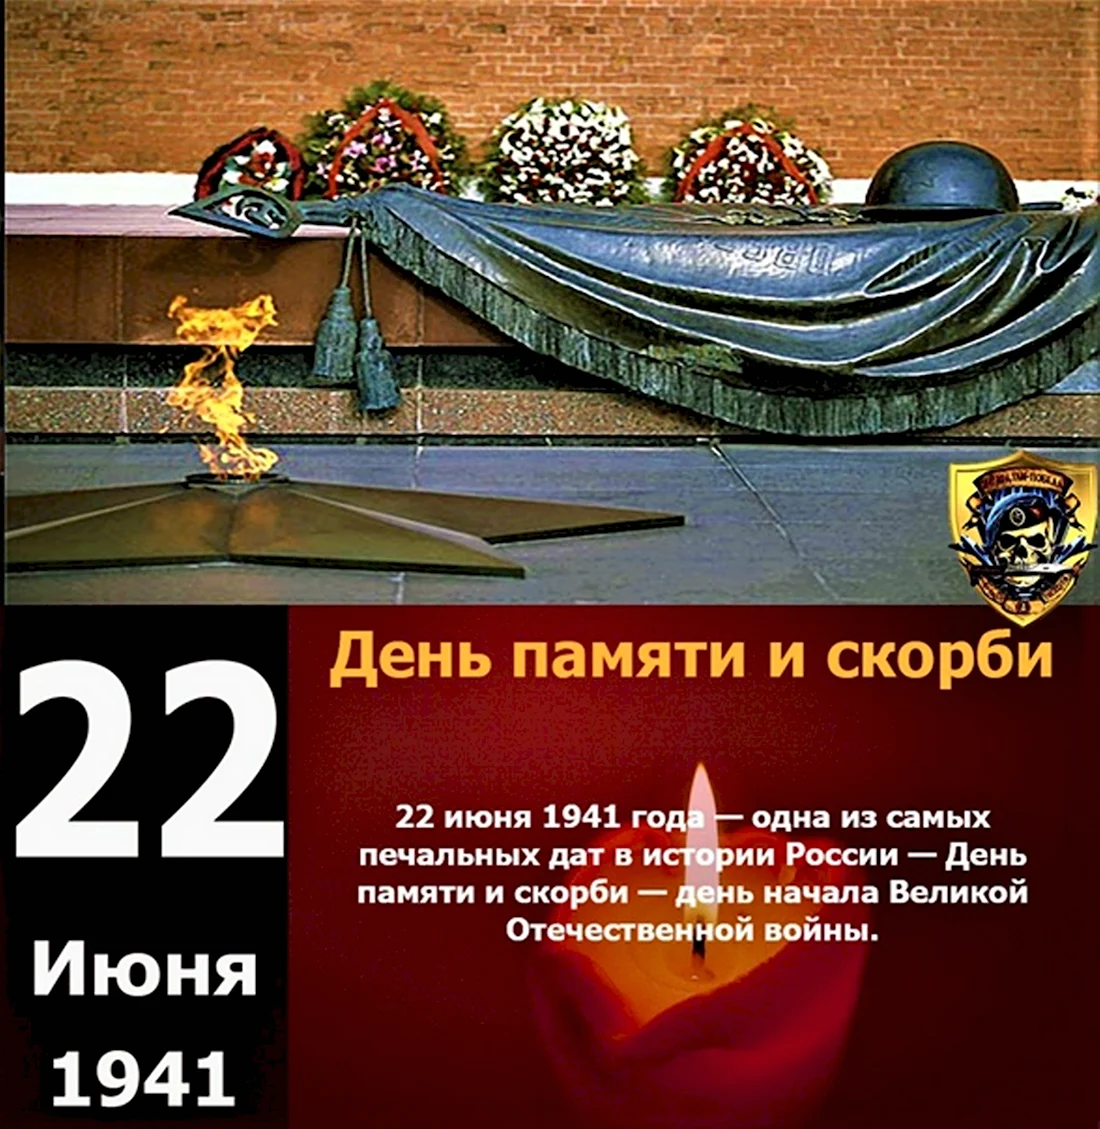 День памяти и скорби — день начала Великой Отечественной войны. Открытка, картинка с поздравлением, с праздником